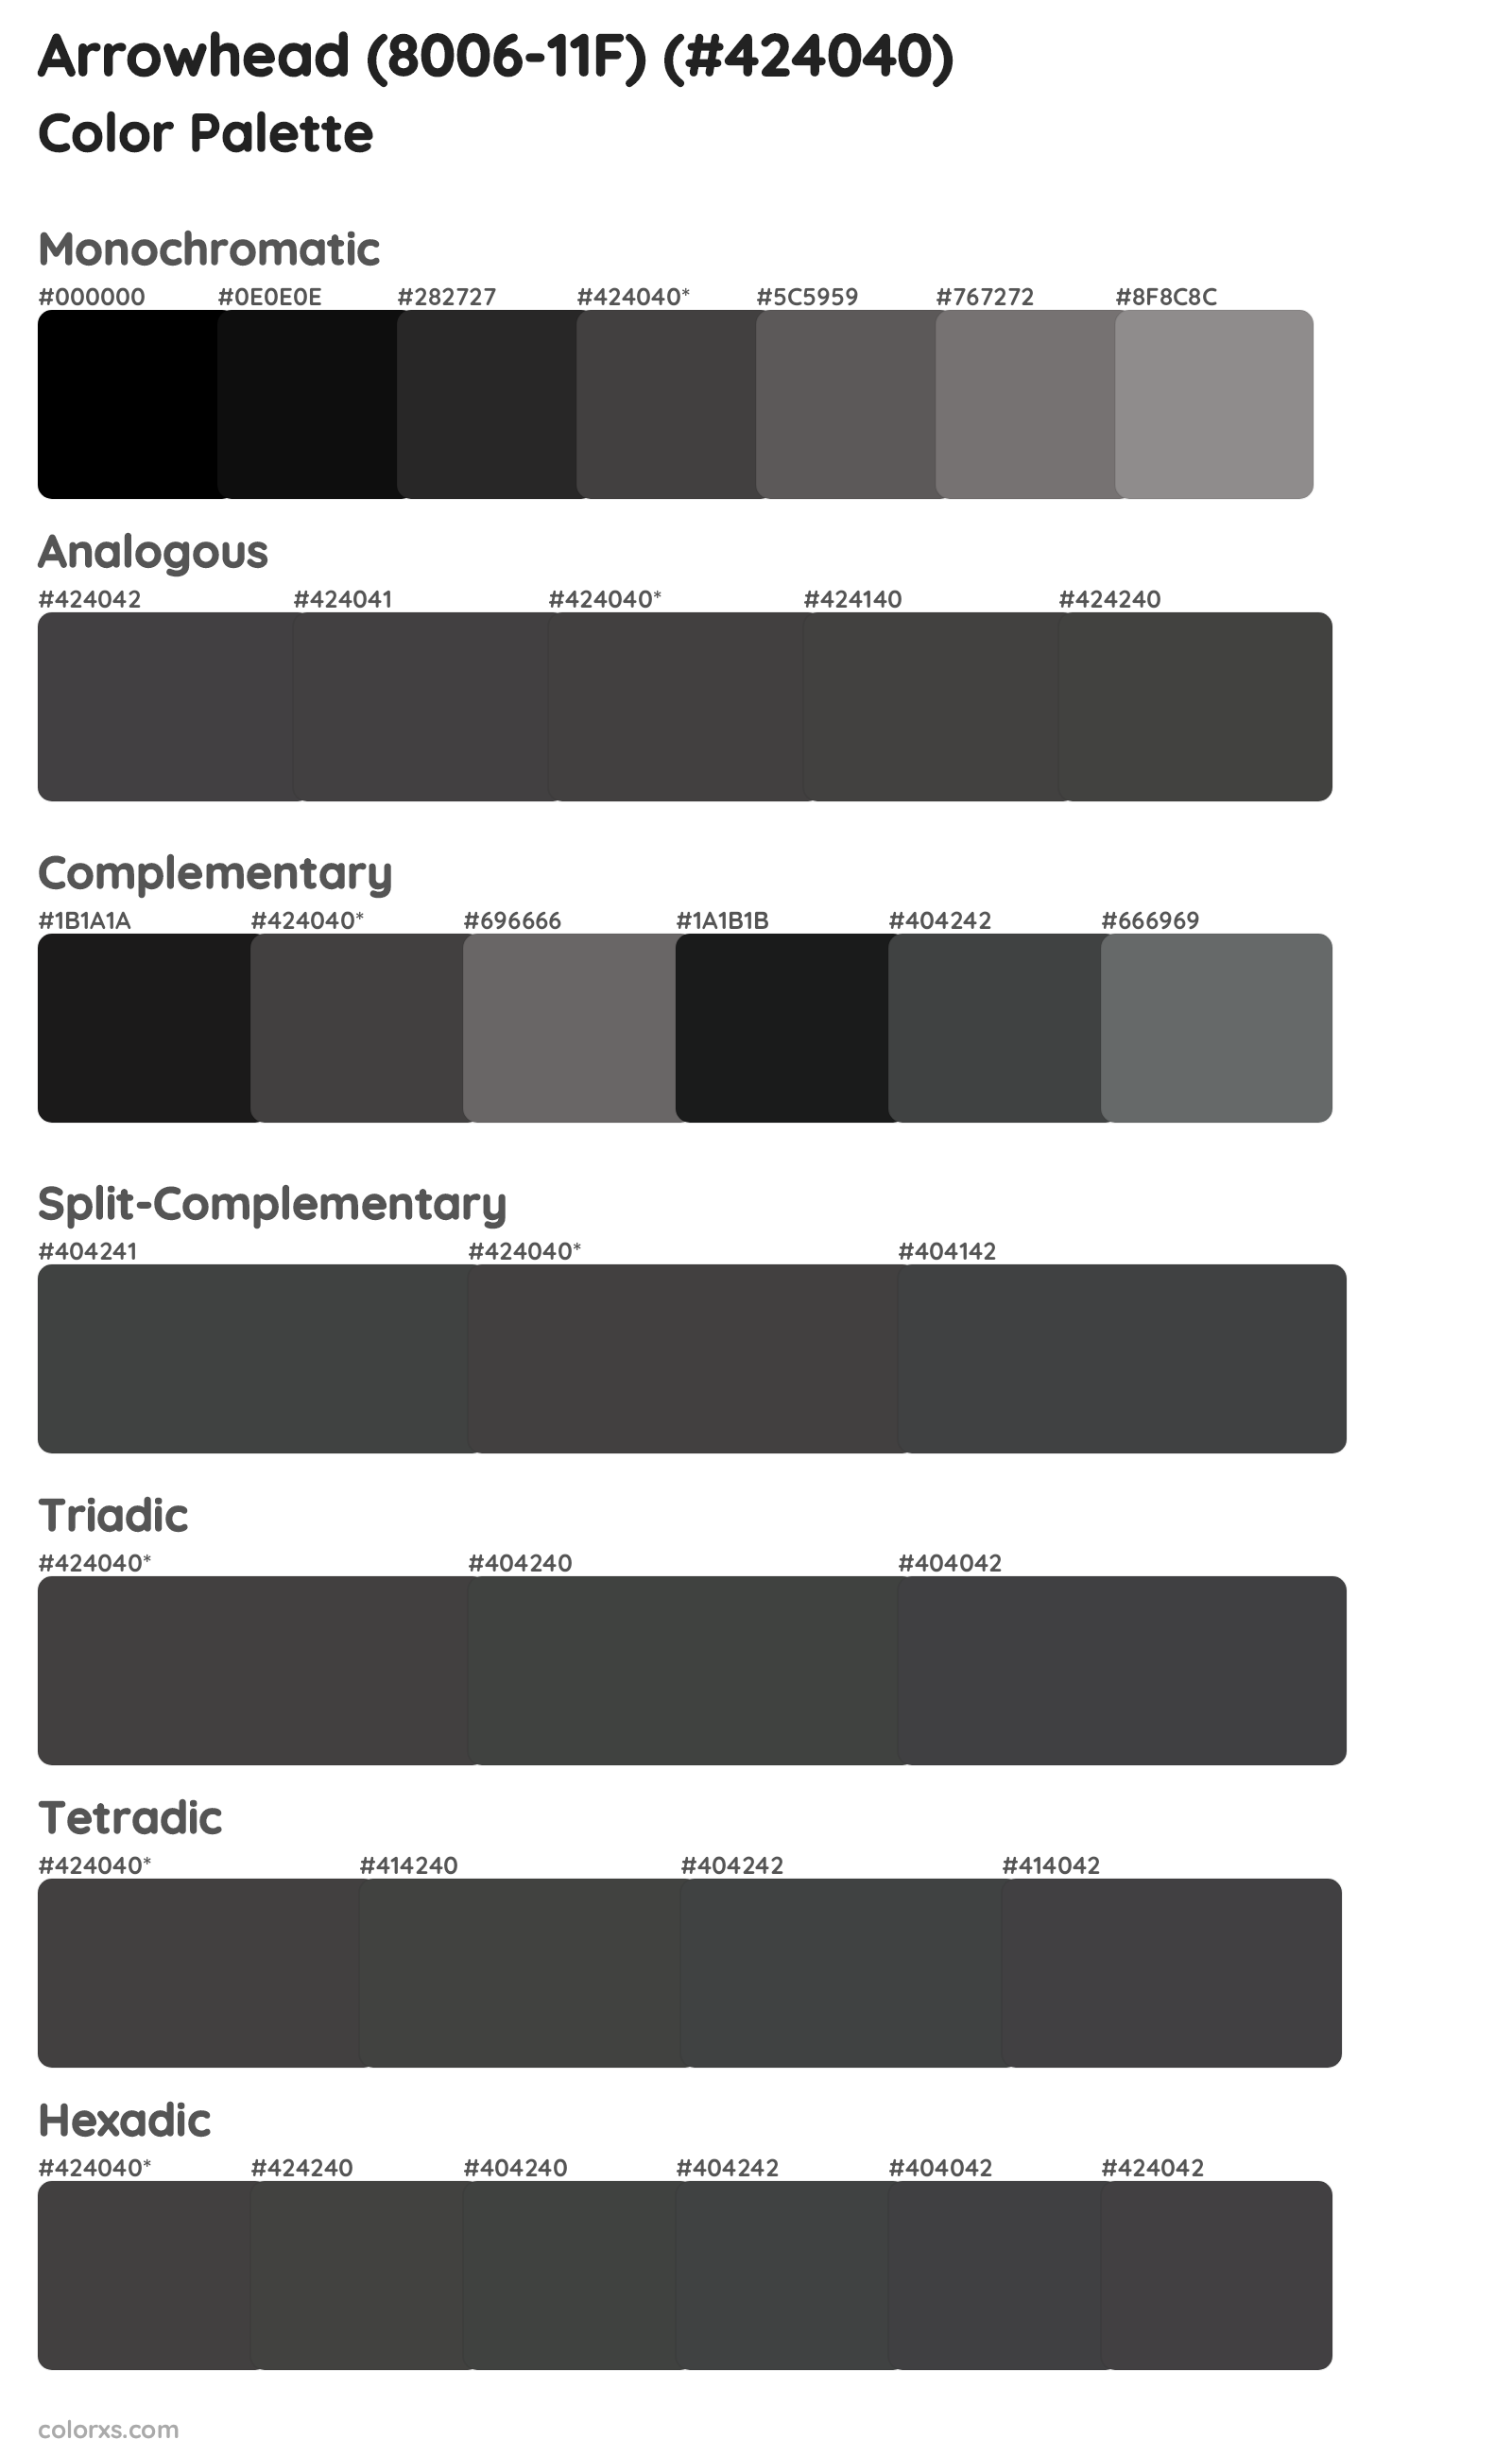 Arrowhead (8006-11F) Color Scheme Palettes